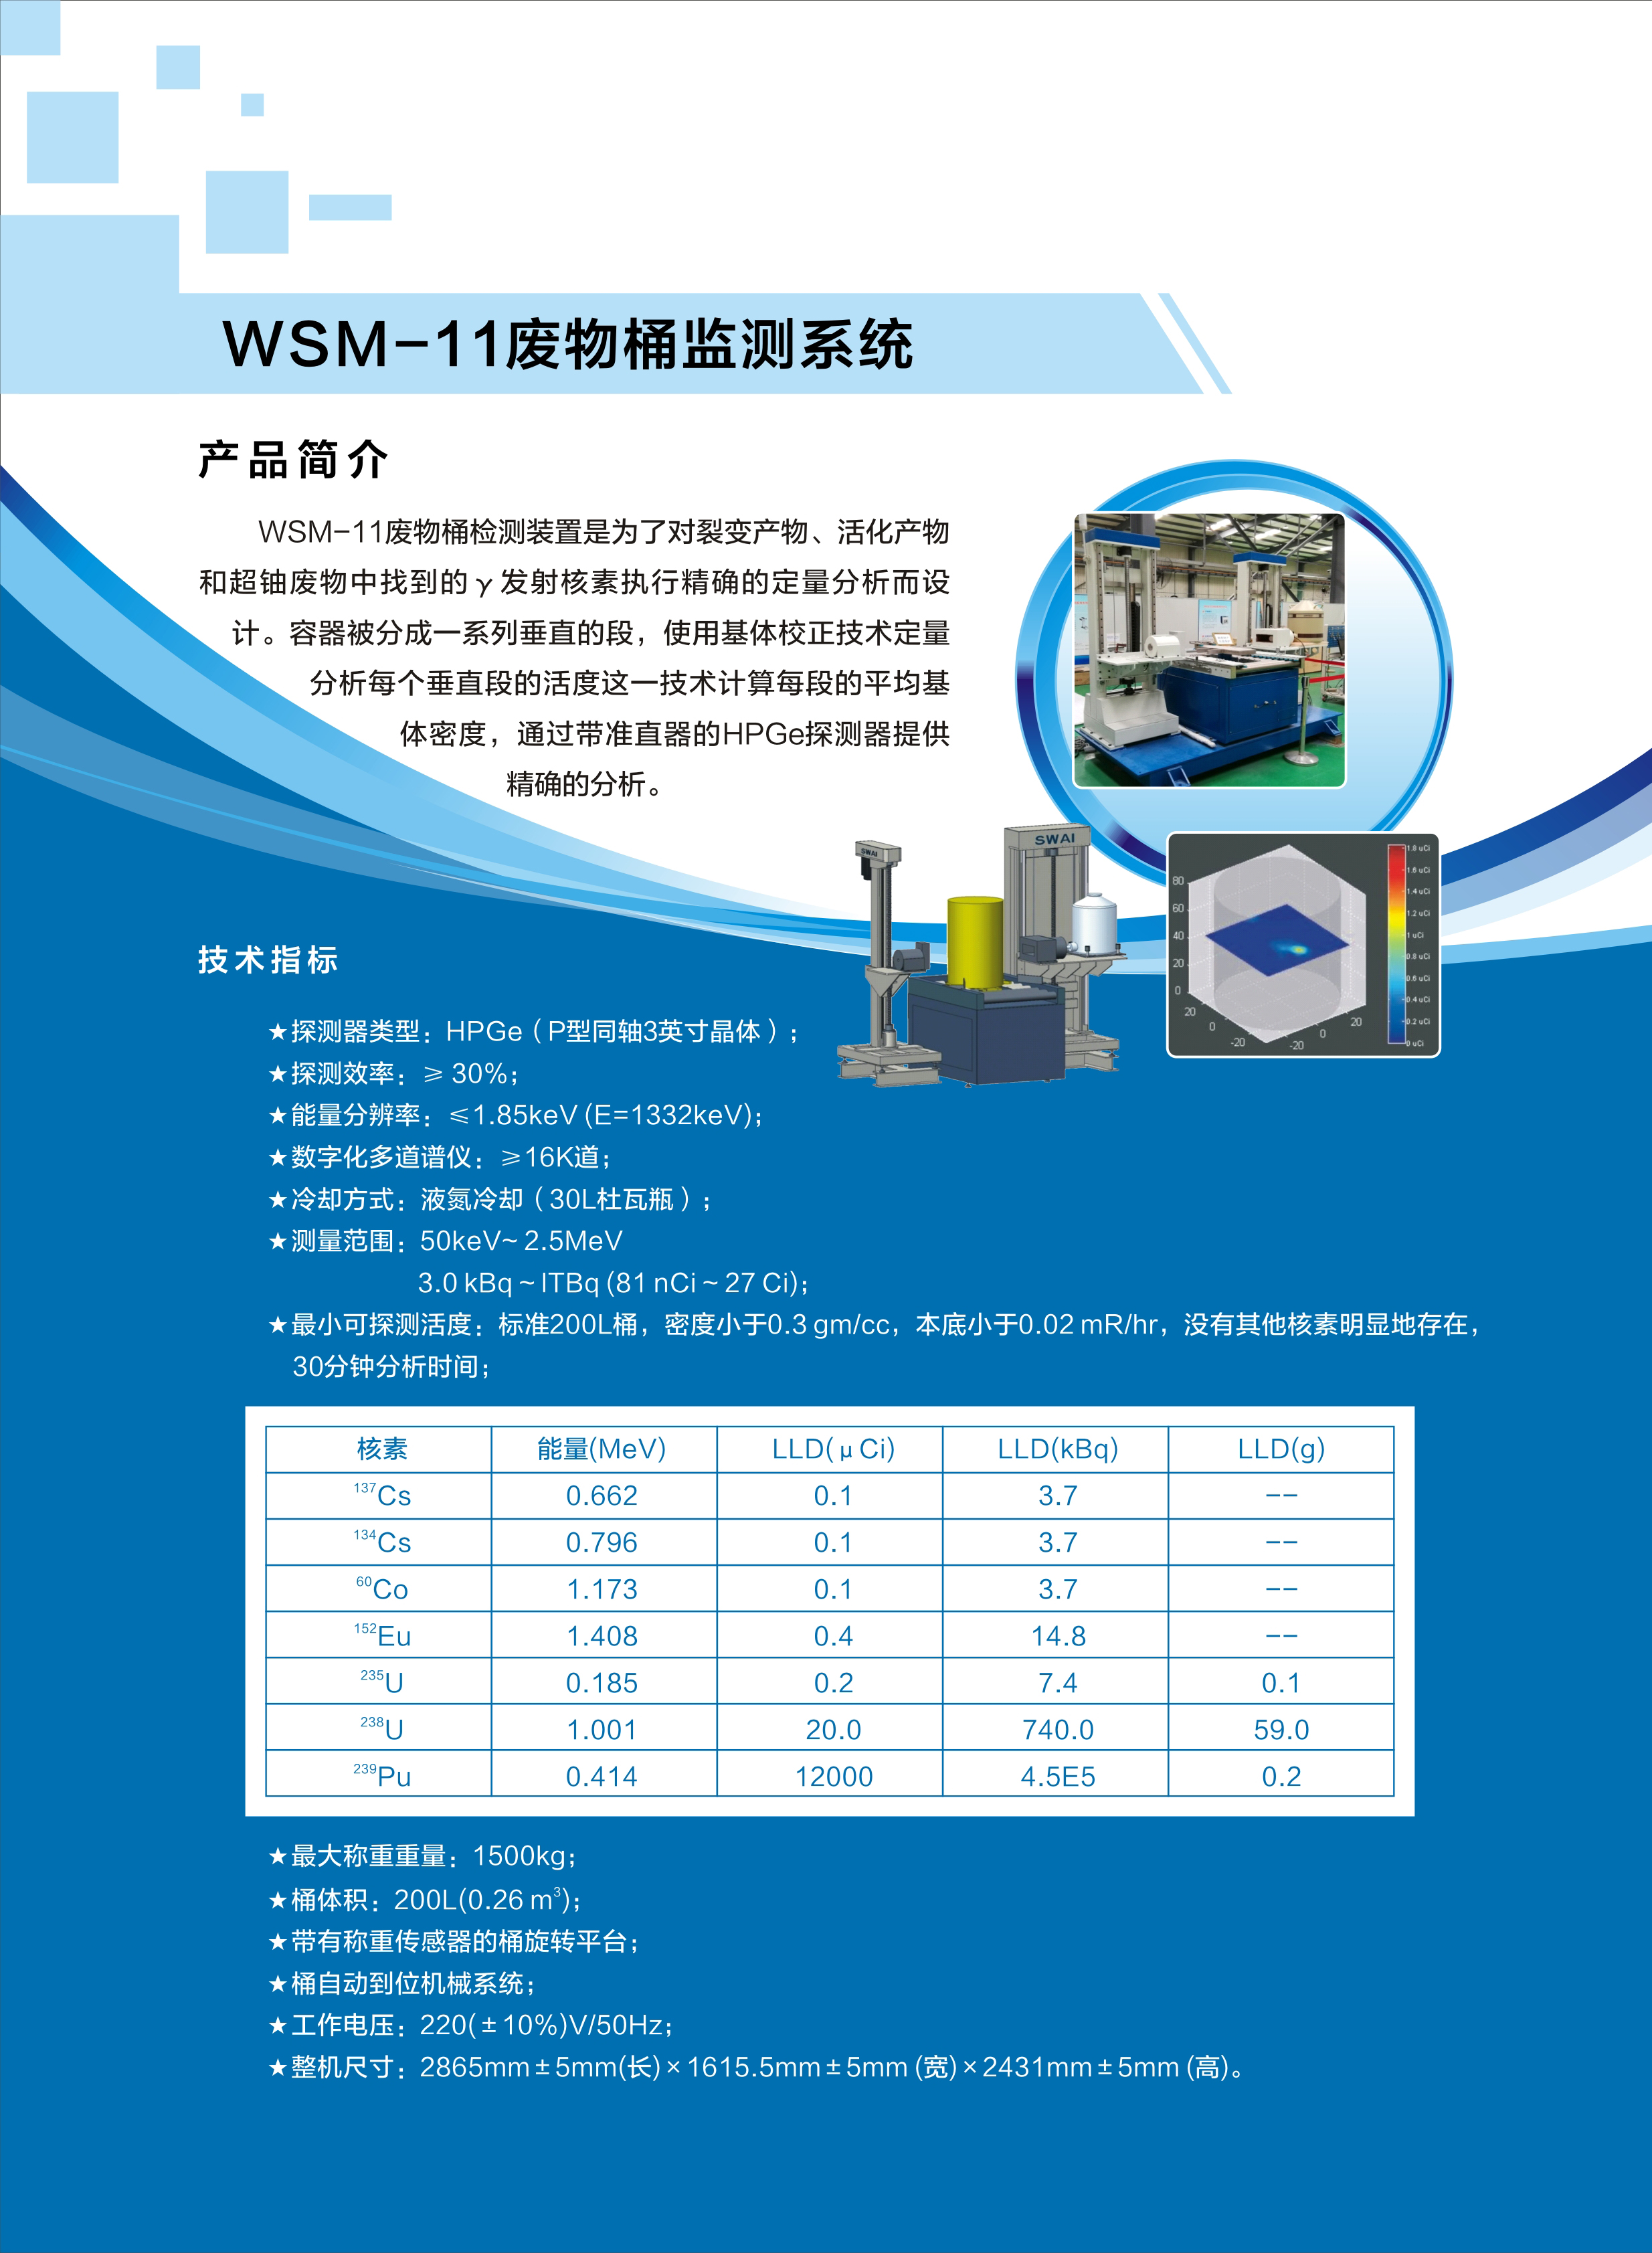 33.WSM-11废物桶监测系统.jpg